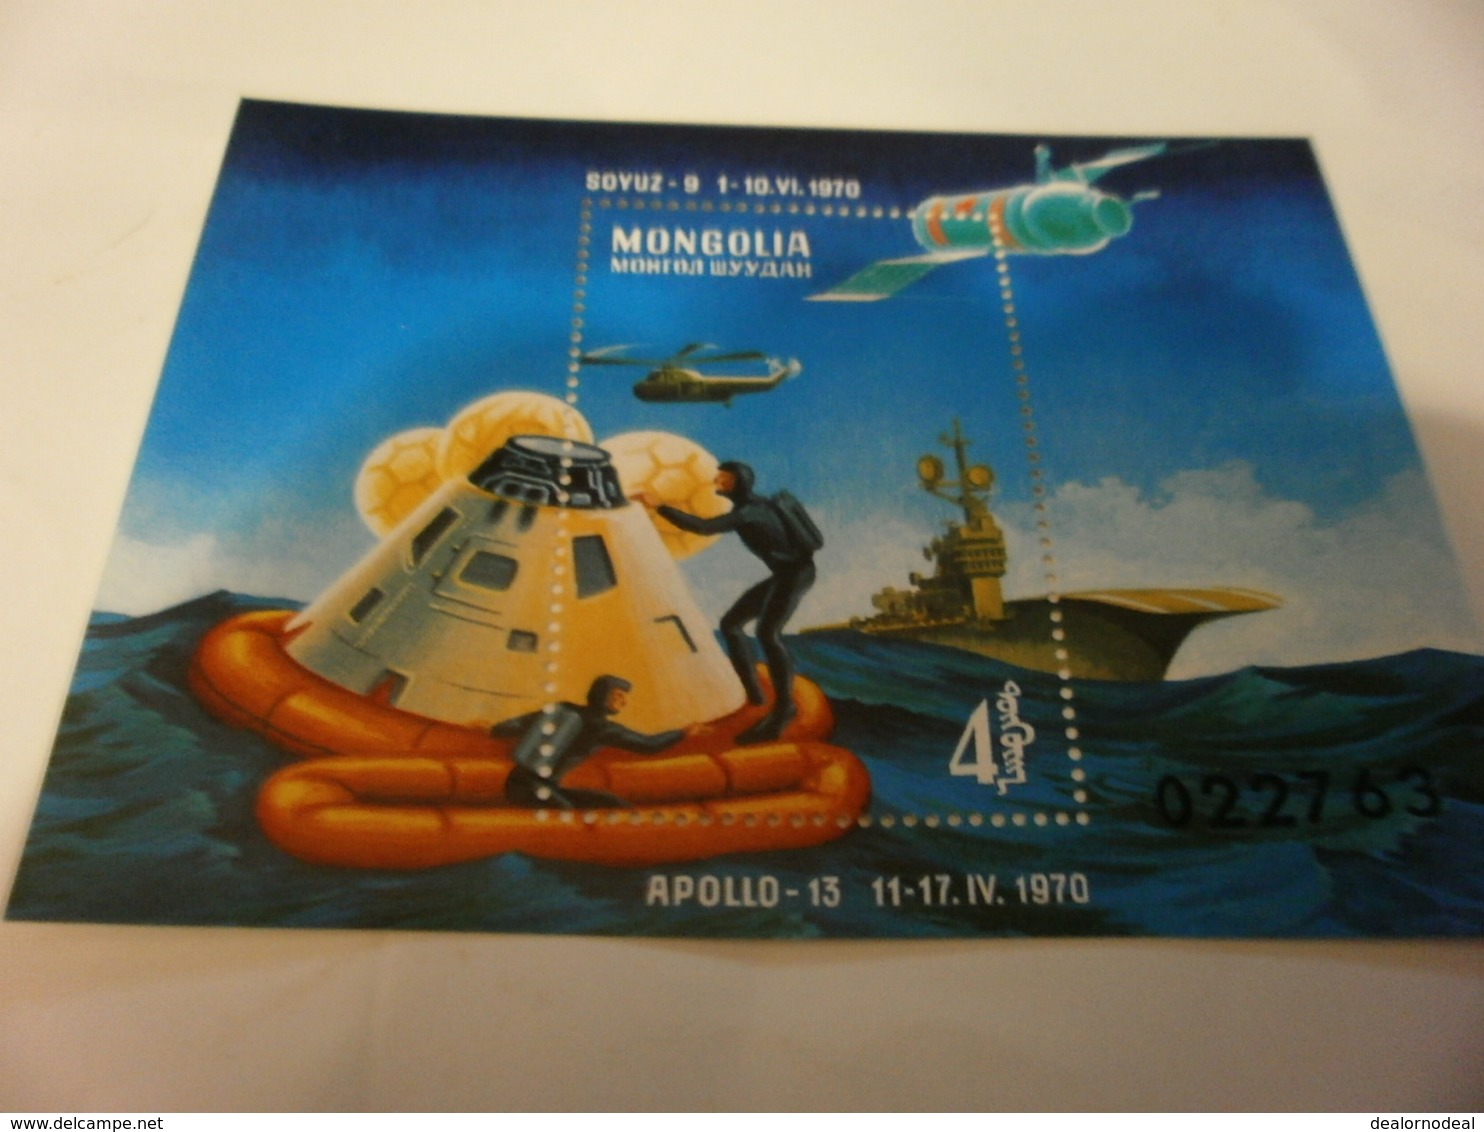 Miniature Sheet 1970 Apollo 13 - Mongolia